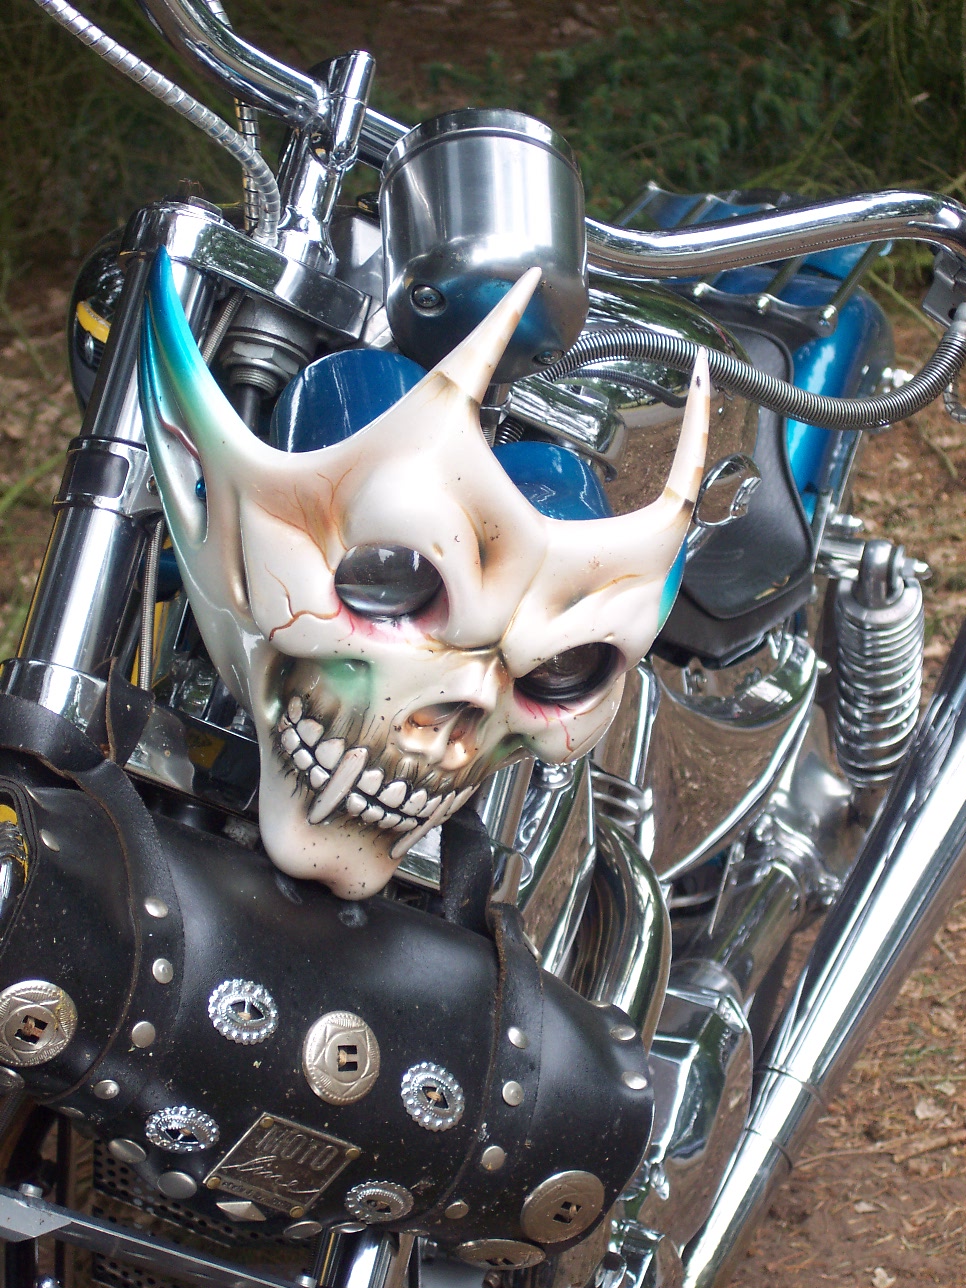 Motorrad: "Skull"